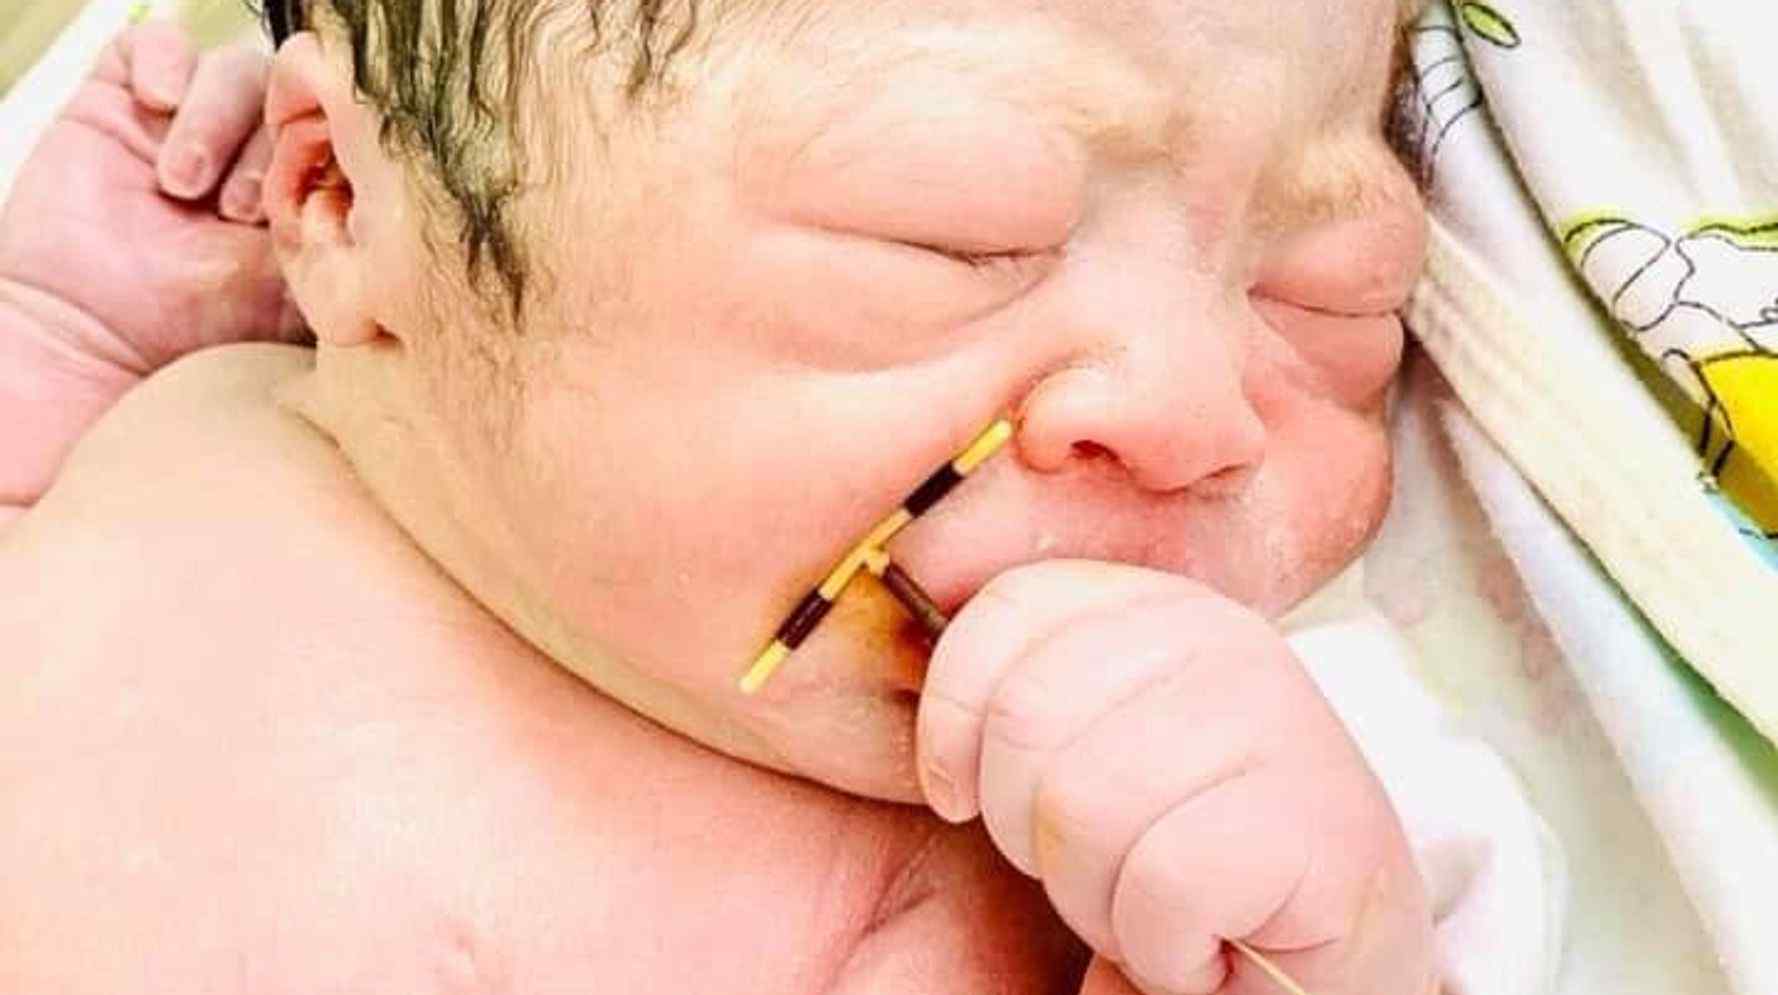  Nëna e kishte vendosur për të mos mbetur shtatzënë, foshnja lind me spiralen në dorë